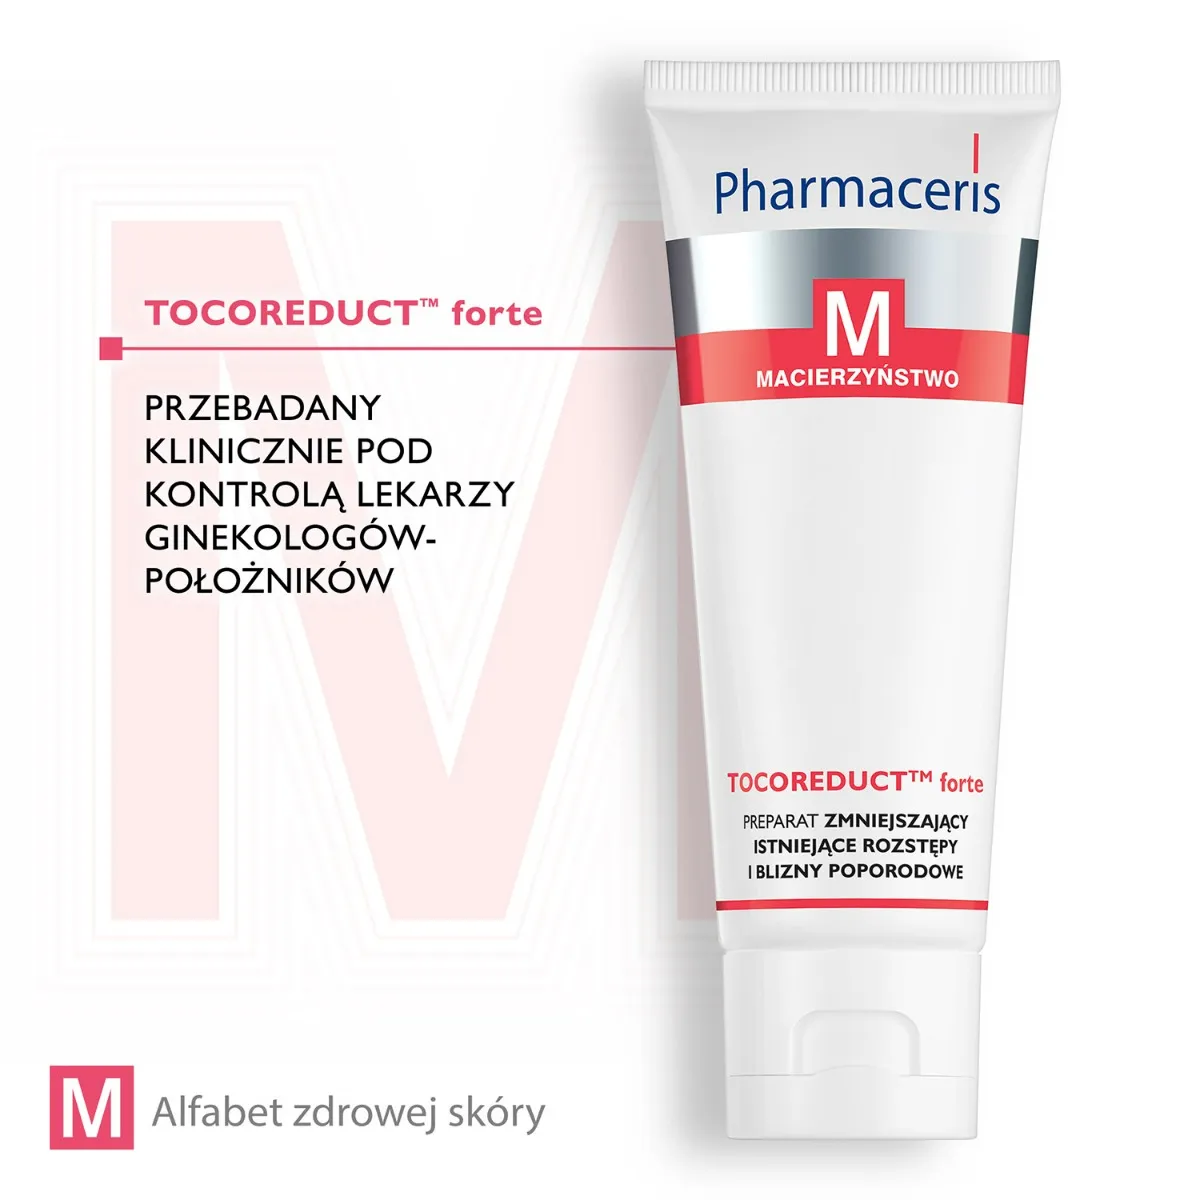 Pharmaceris M Tocoreduct forte, preparat zmniejszający istniejące rozstępy i blizny poporodowe, 75 ml 